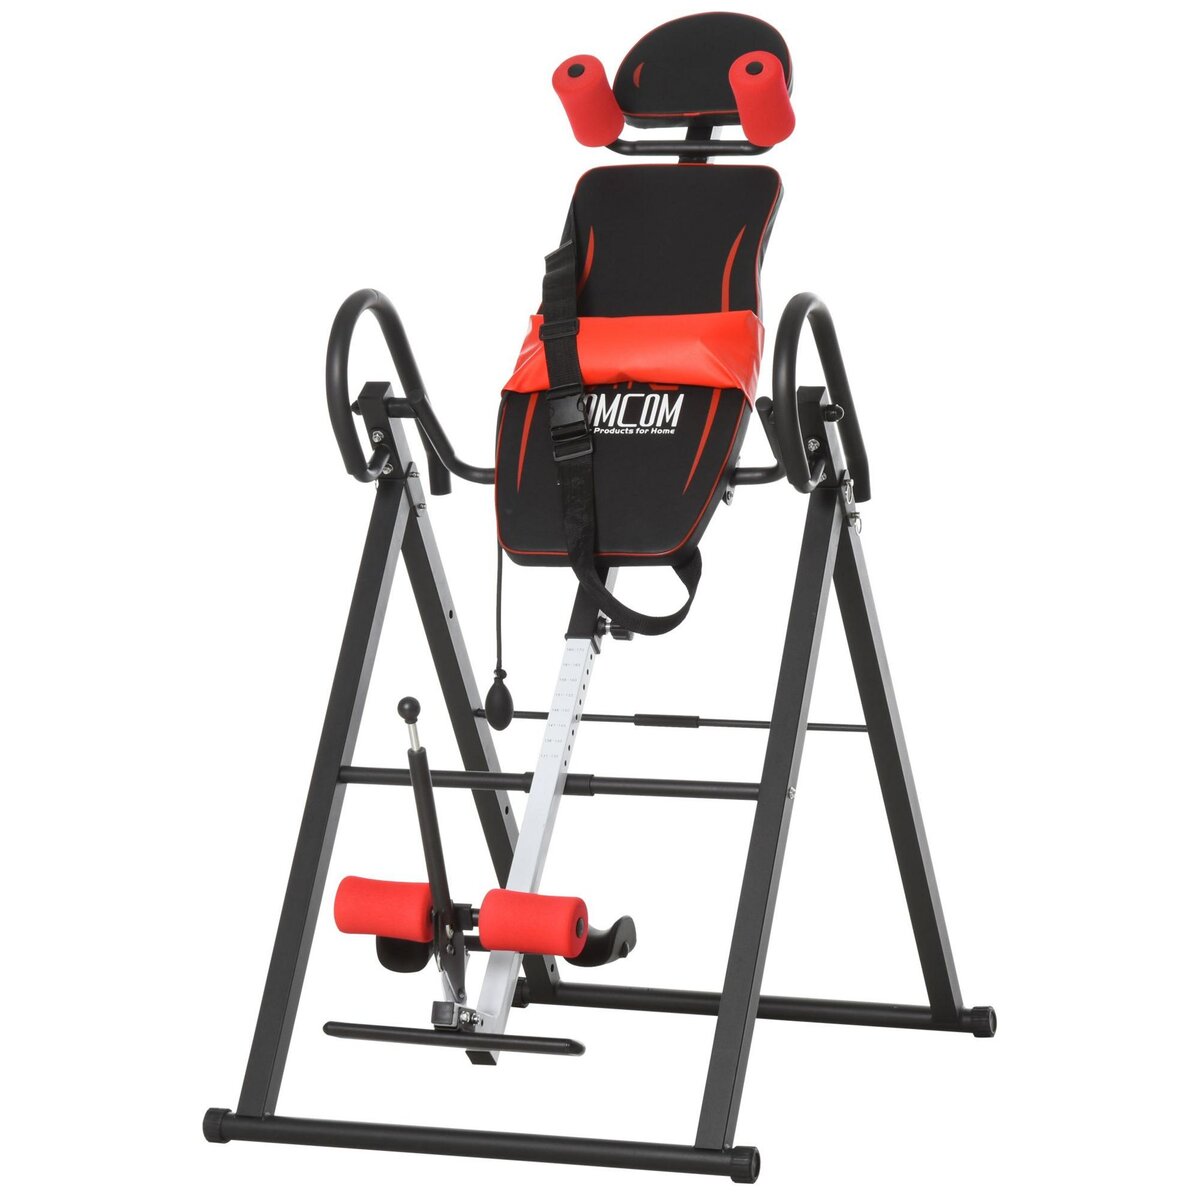 HOMCOM Table d'inversion de musculation pliable ceinture de sécurité réglable angle inversé ajustable 3 niveaux acier rouge noir